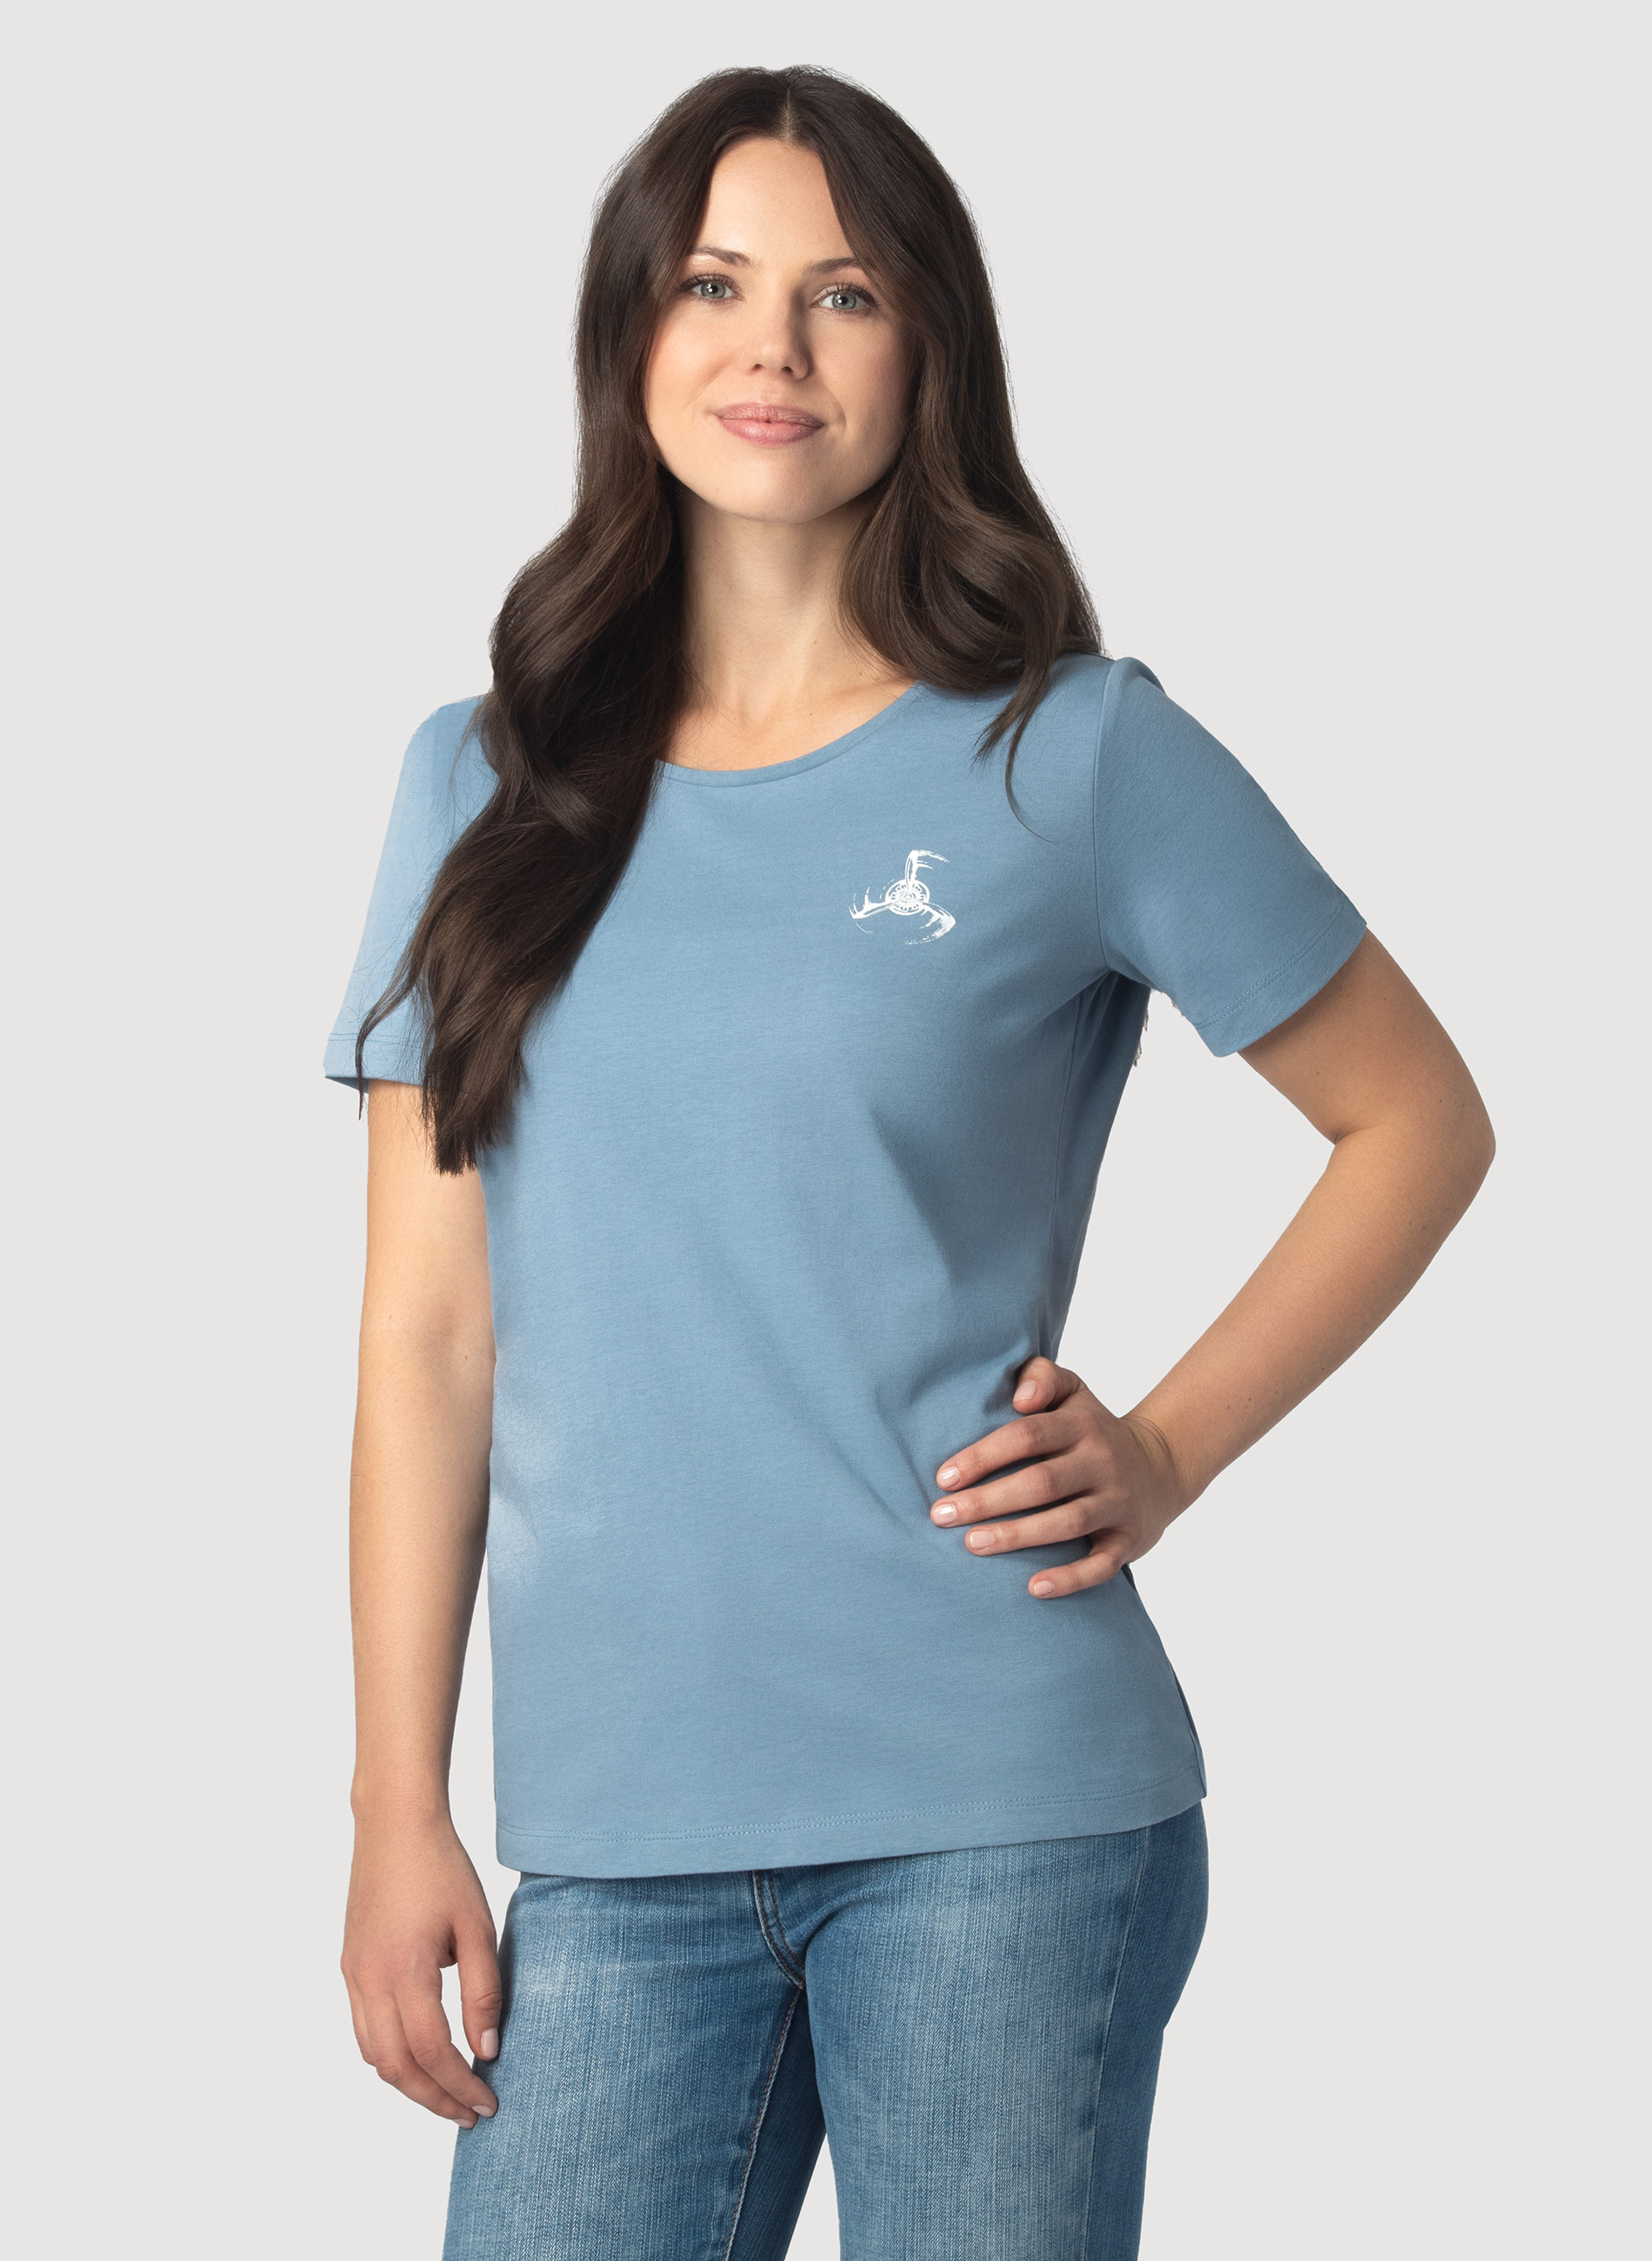 Propeller T-Shirt Women's